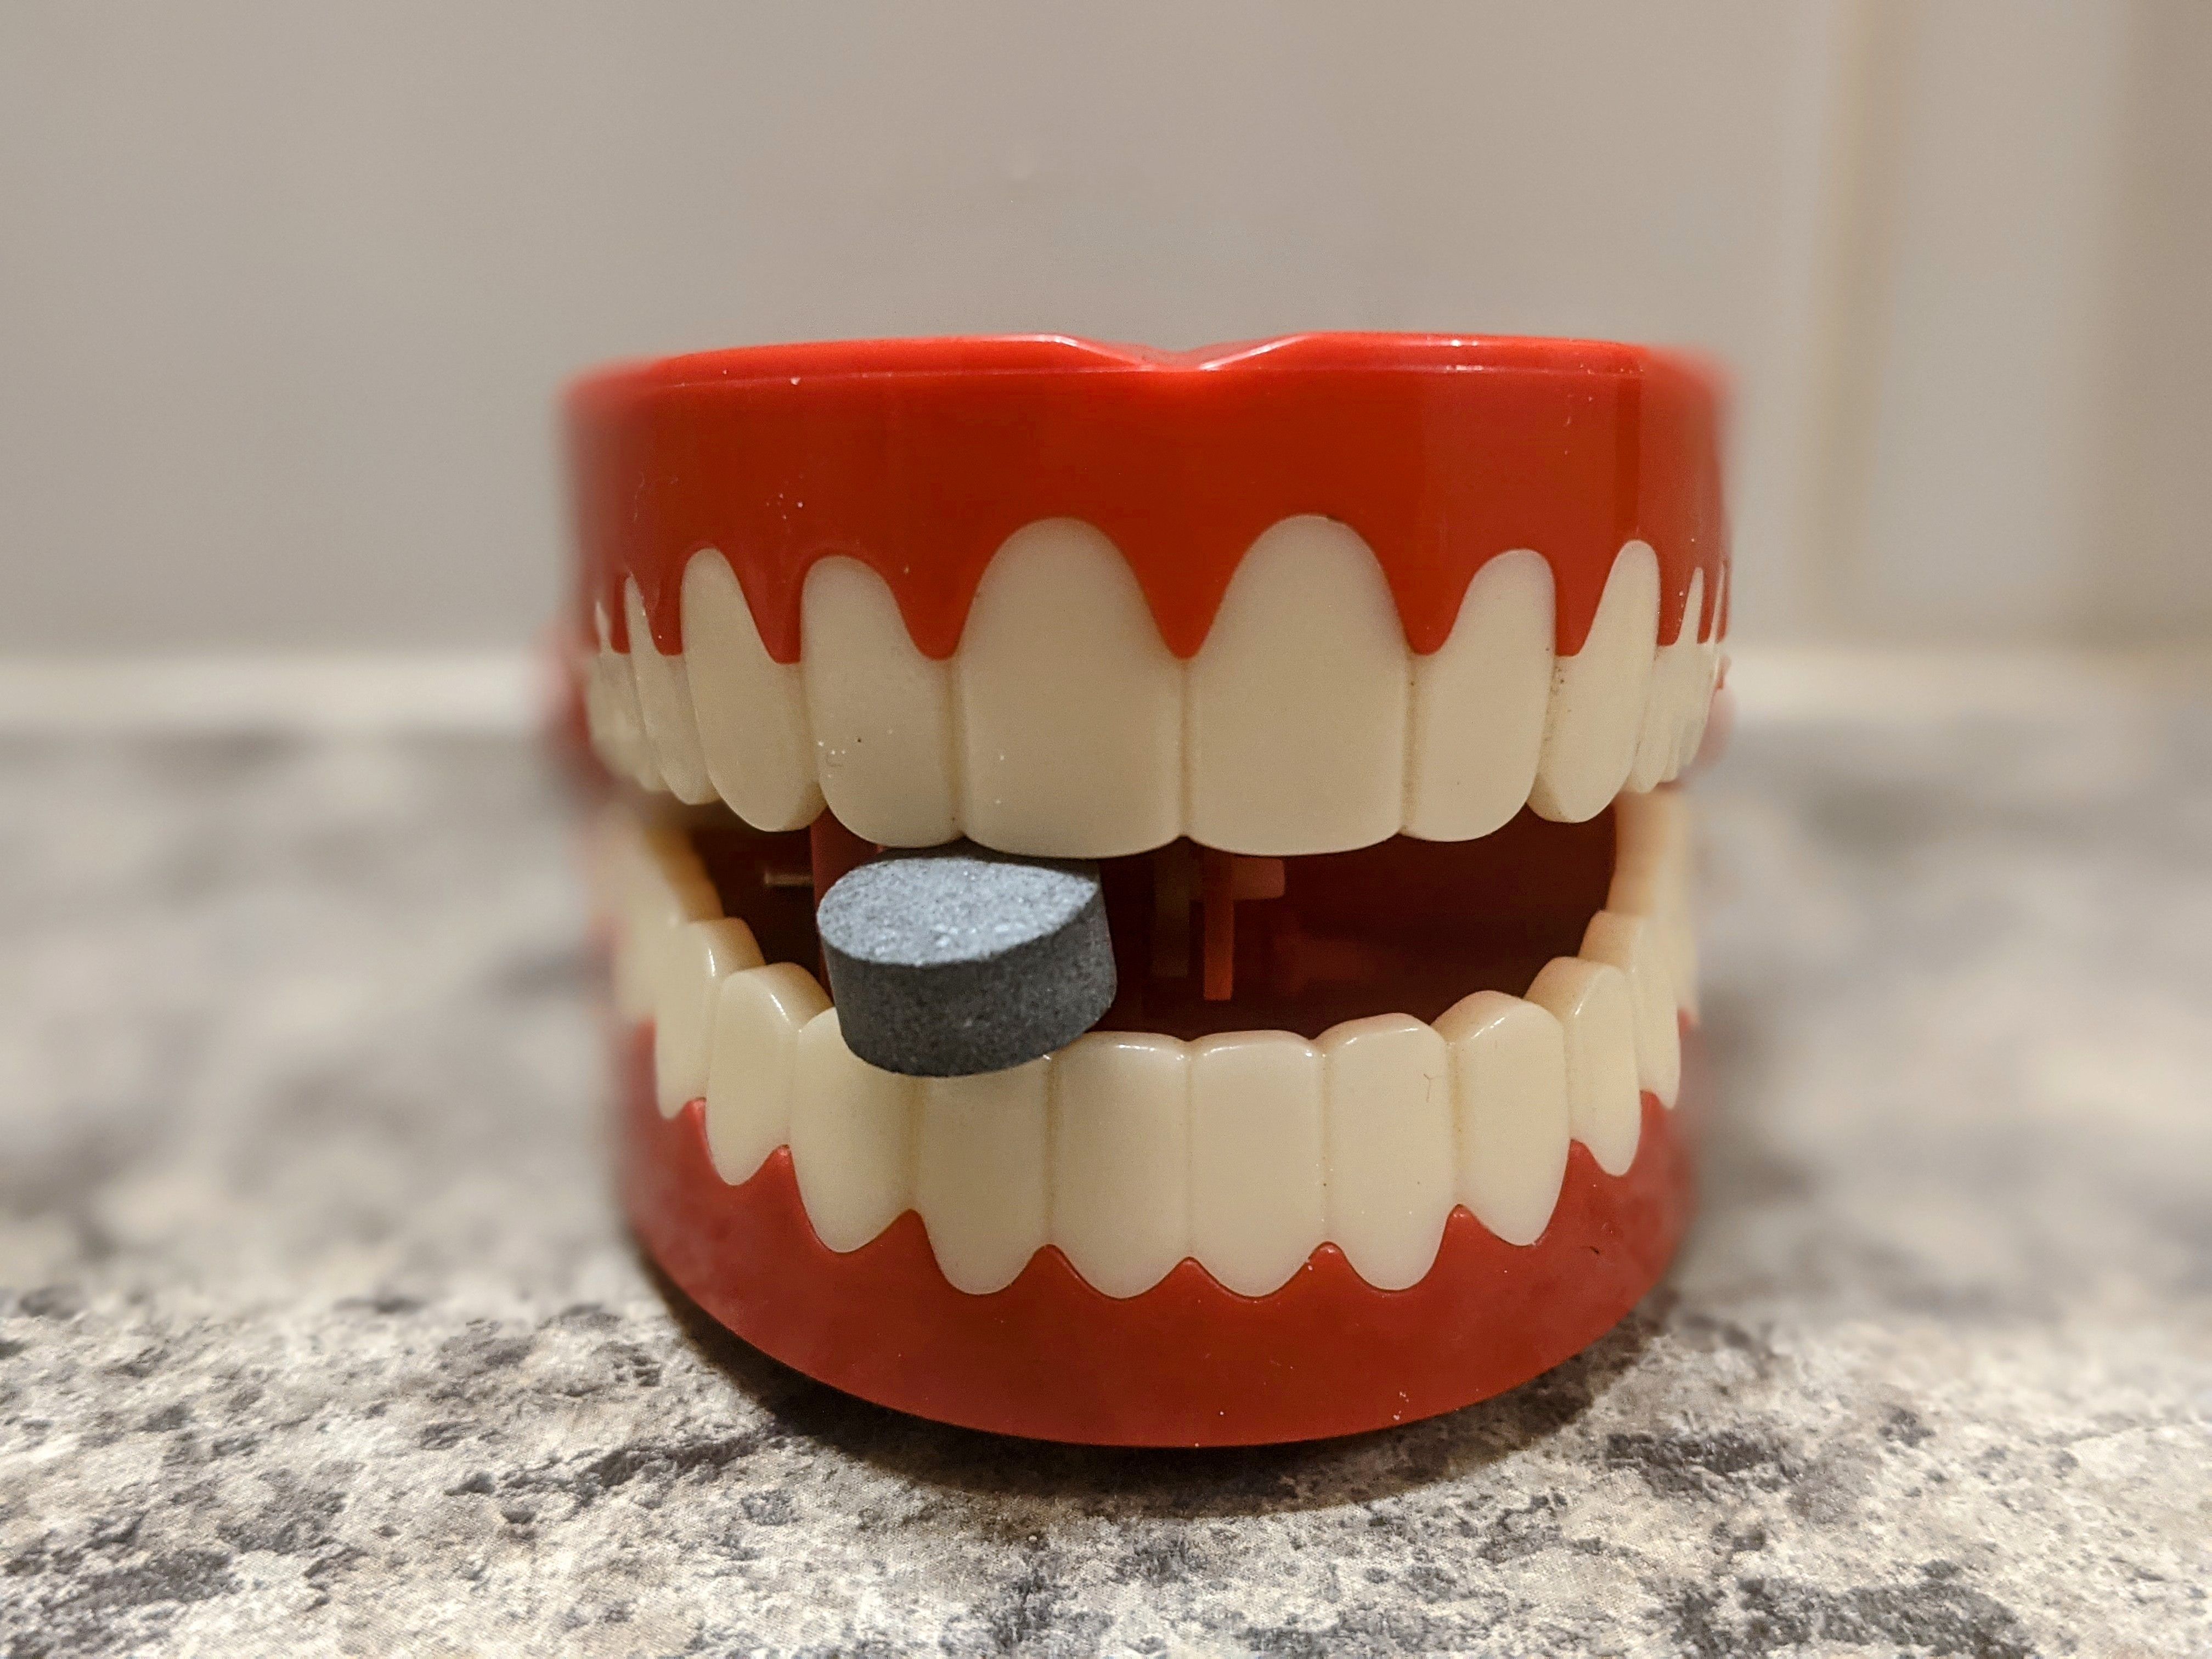 Пробали смо: Како користити таблете пасте за зубе